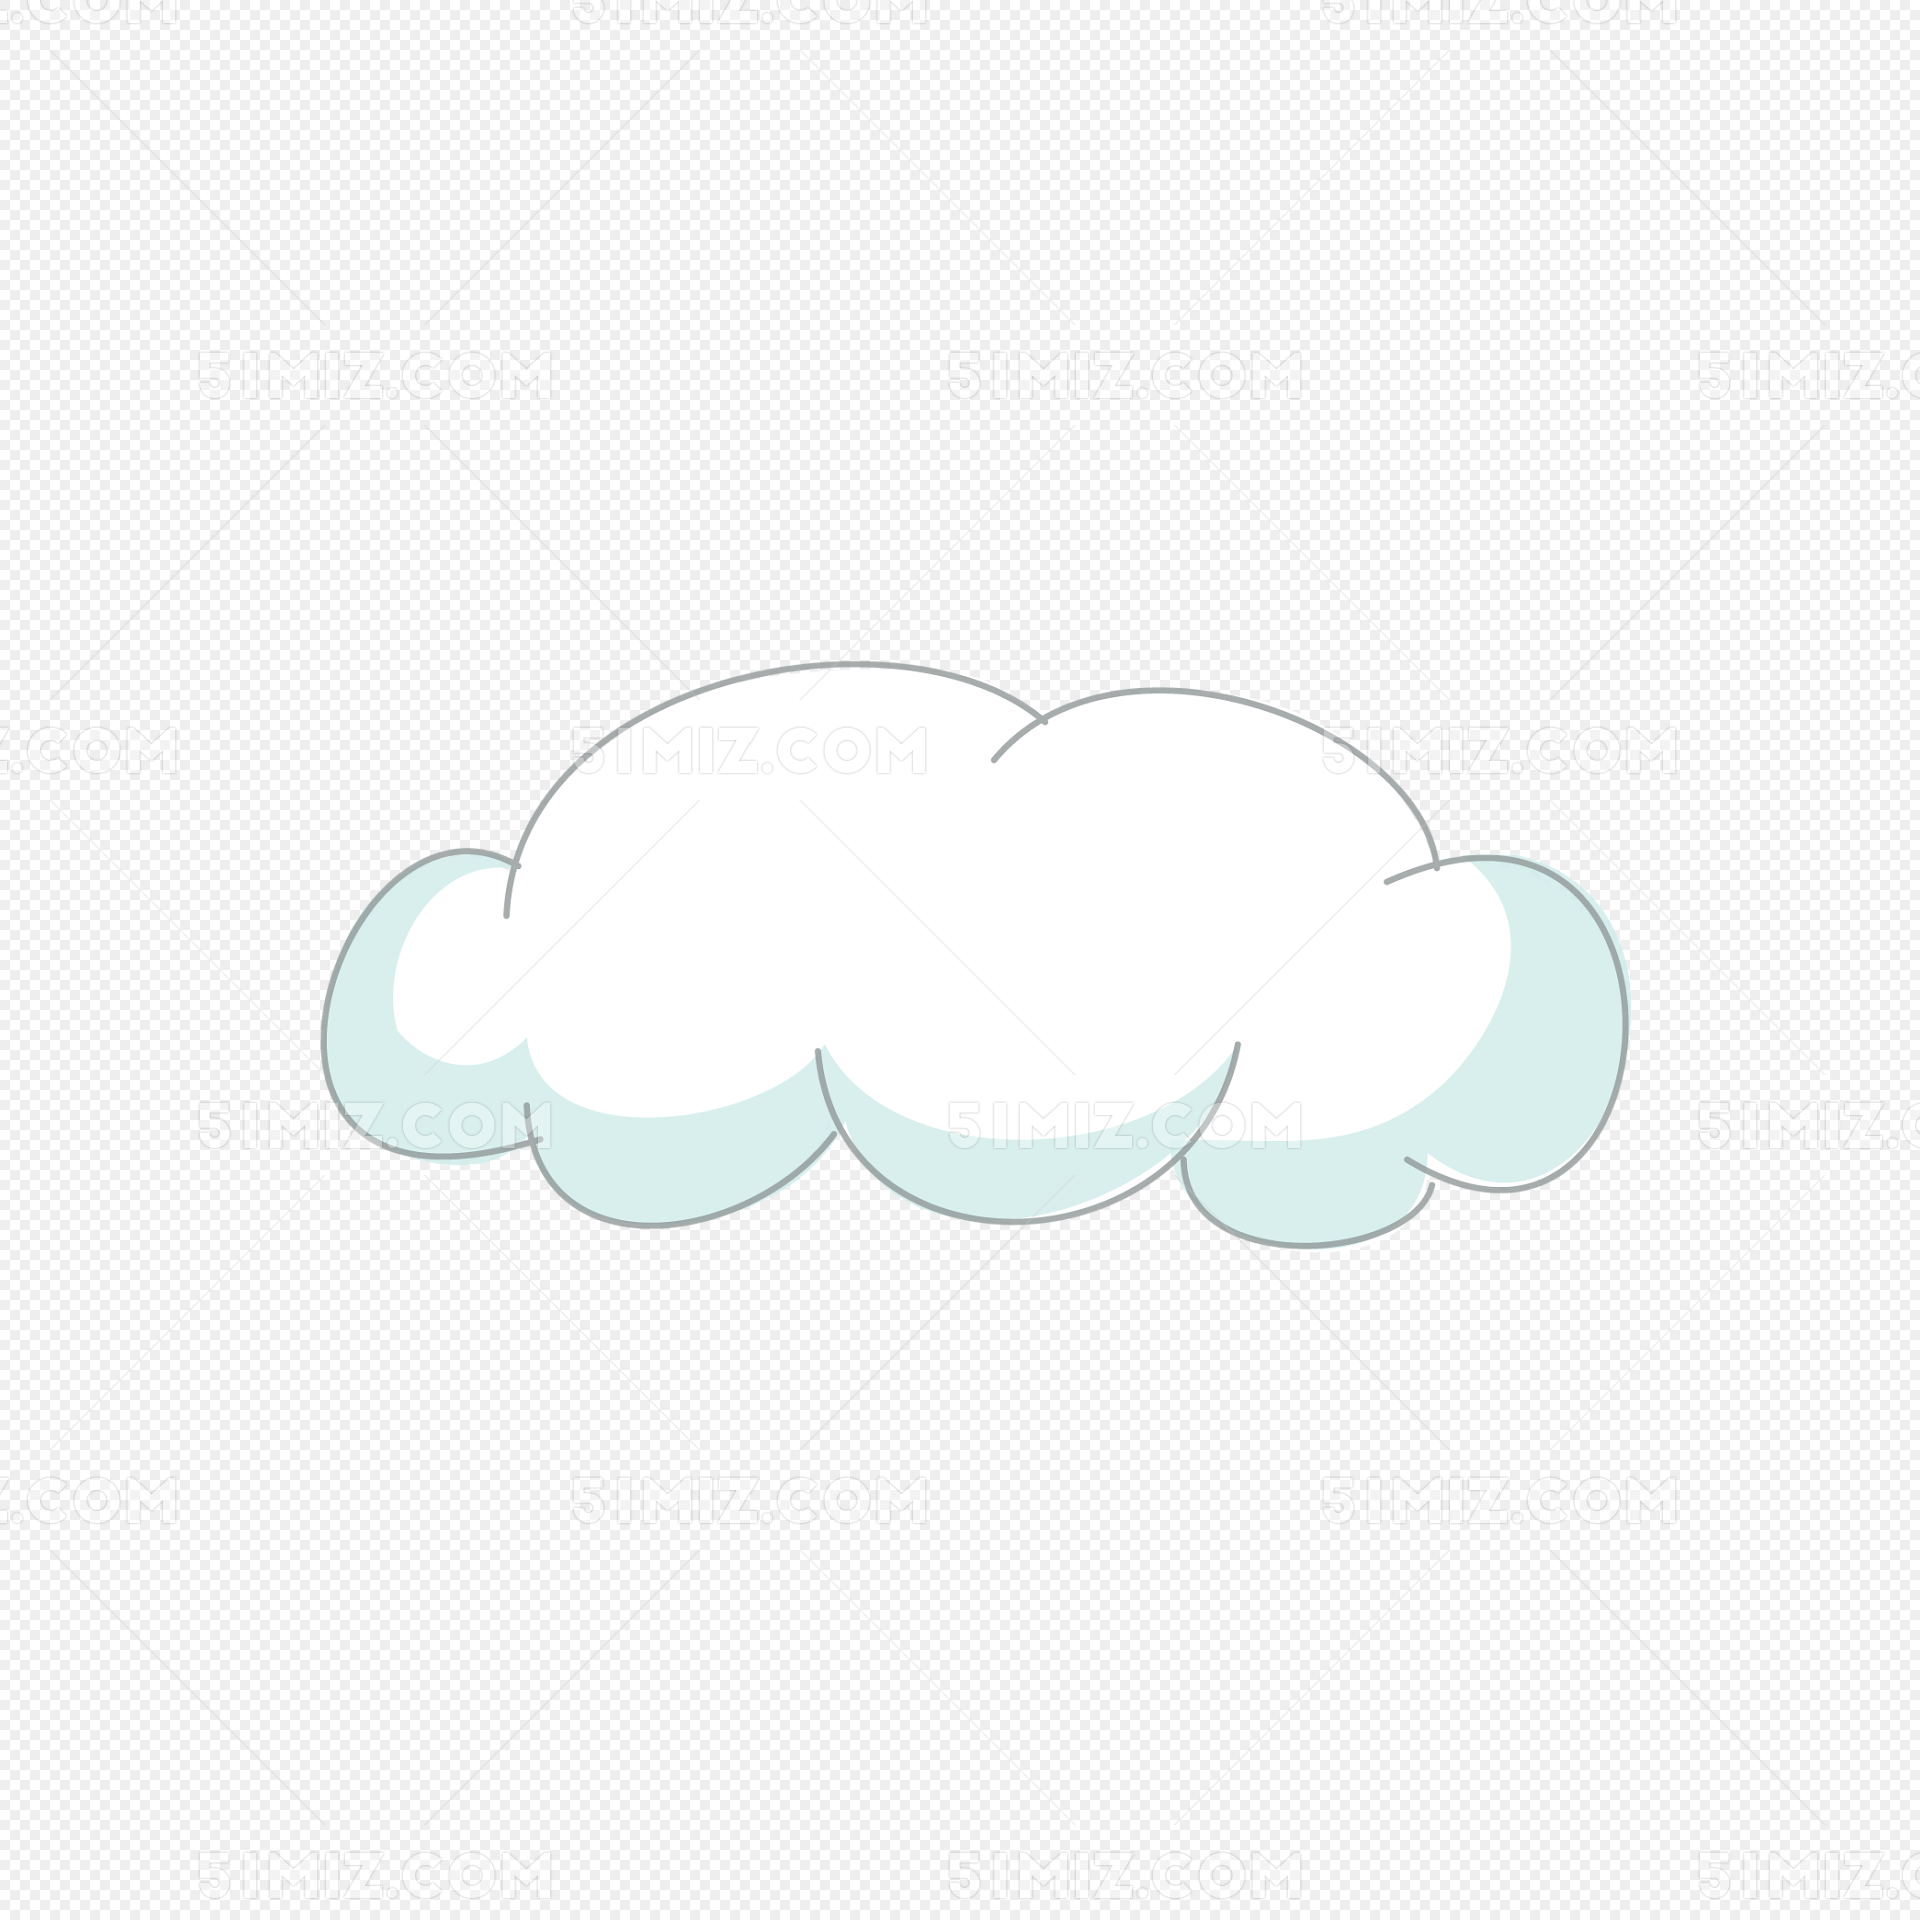 一朵卡通云朵图片素材免费下载 - 觅知网